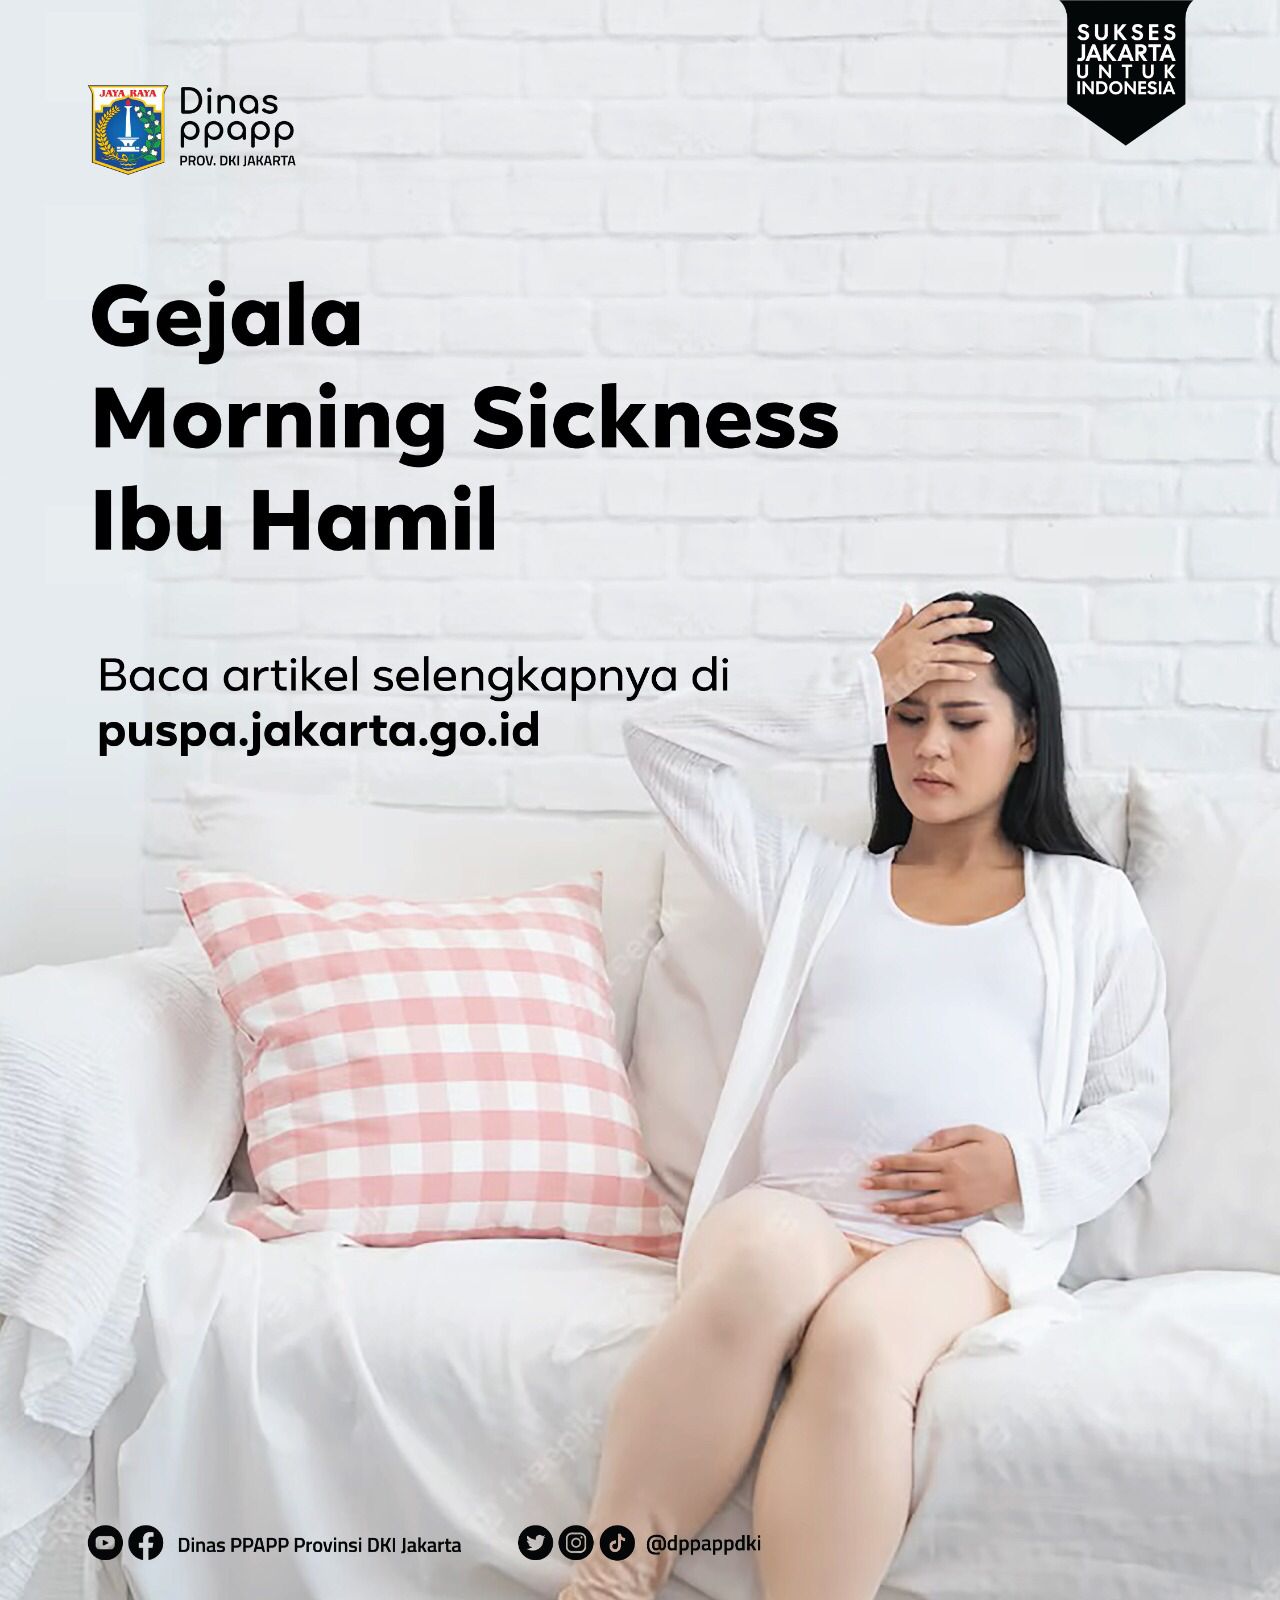 Gejala Morning Sickness Ibu Hamil